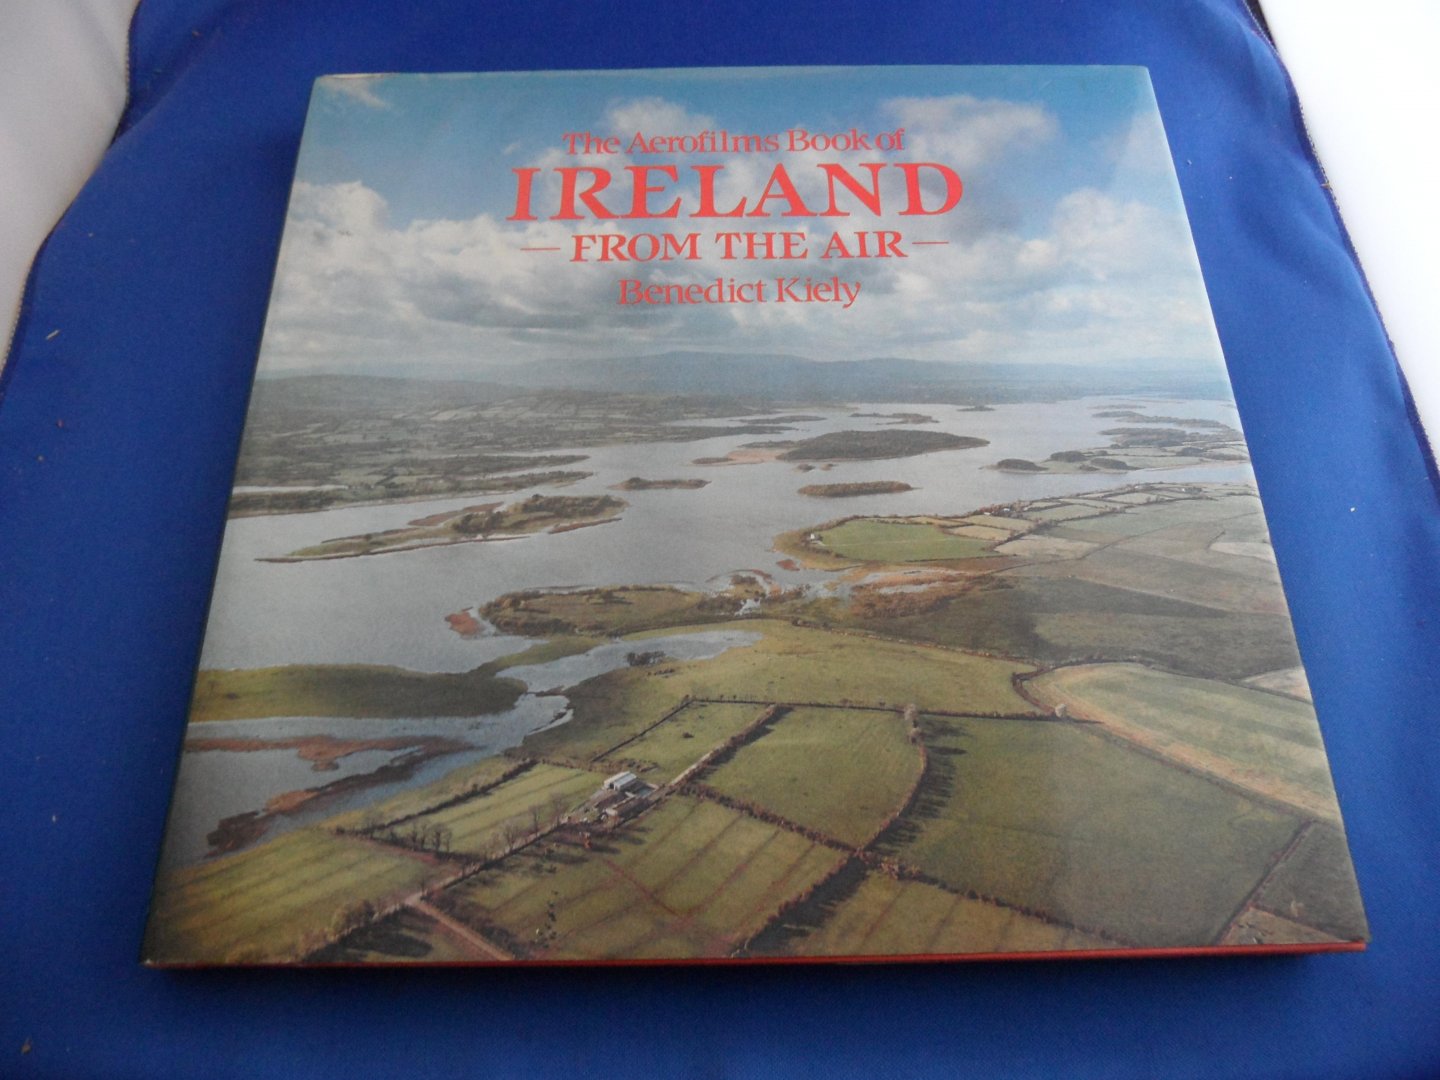 Kiely, Benedict - The Aerofilms book of Ireland